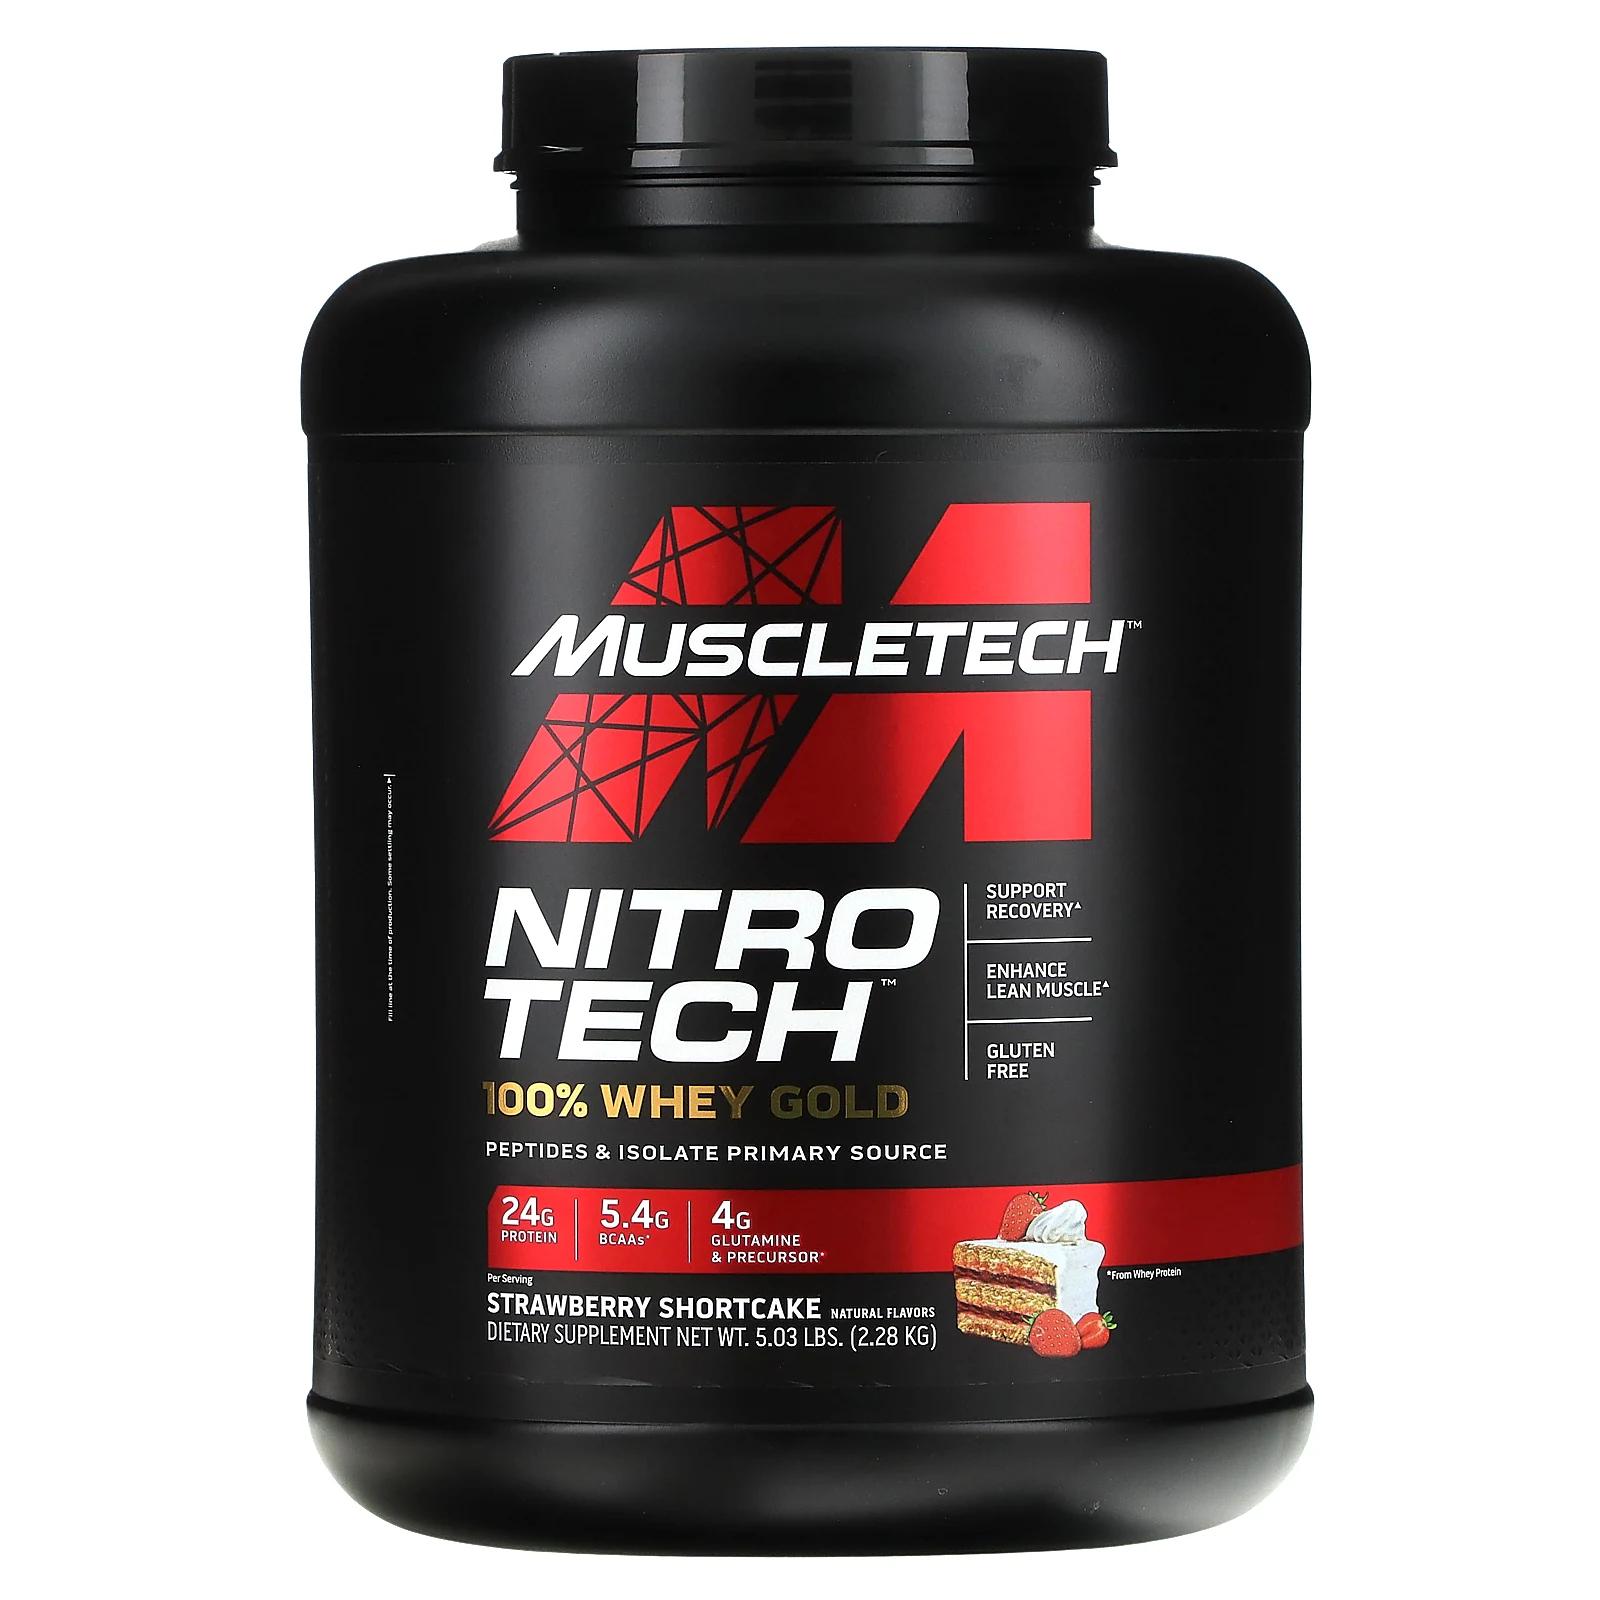 muscletech nitro tech 100% whey gold вкус песочного печенья с клубникой 2 28 кг 5 03 фунта Muscletech Nitro Tech 100% Whey Gold со вкусом клубники 2,51 кг (5,53 фунта)